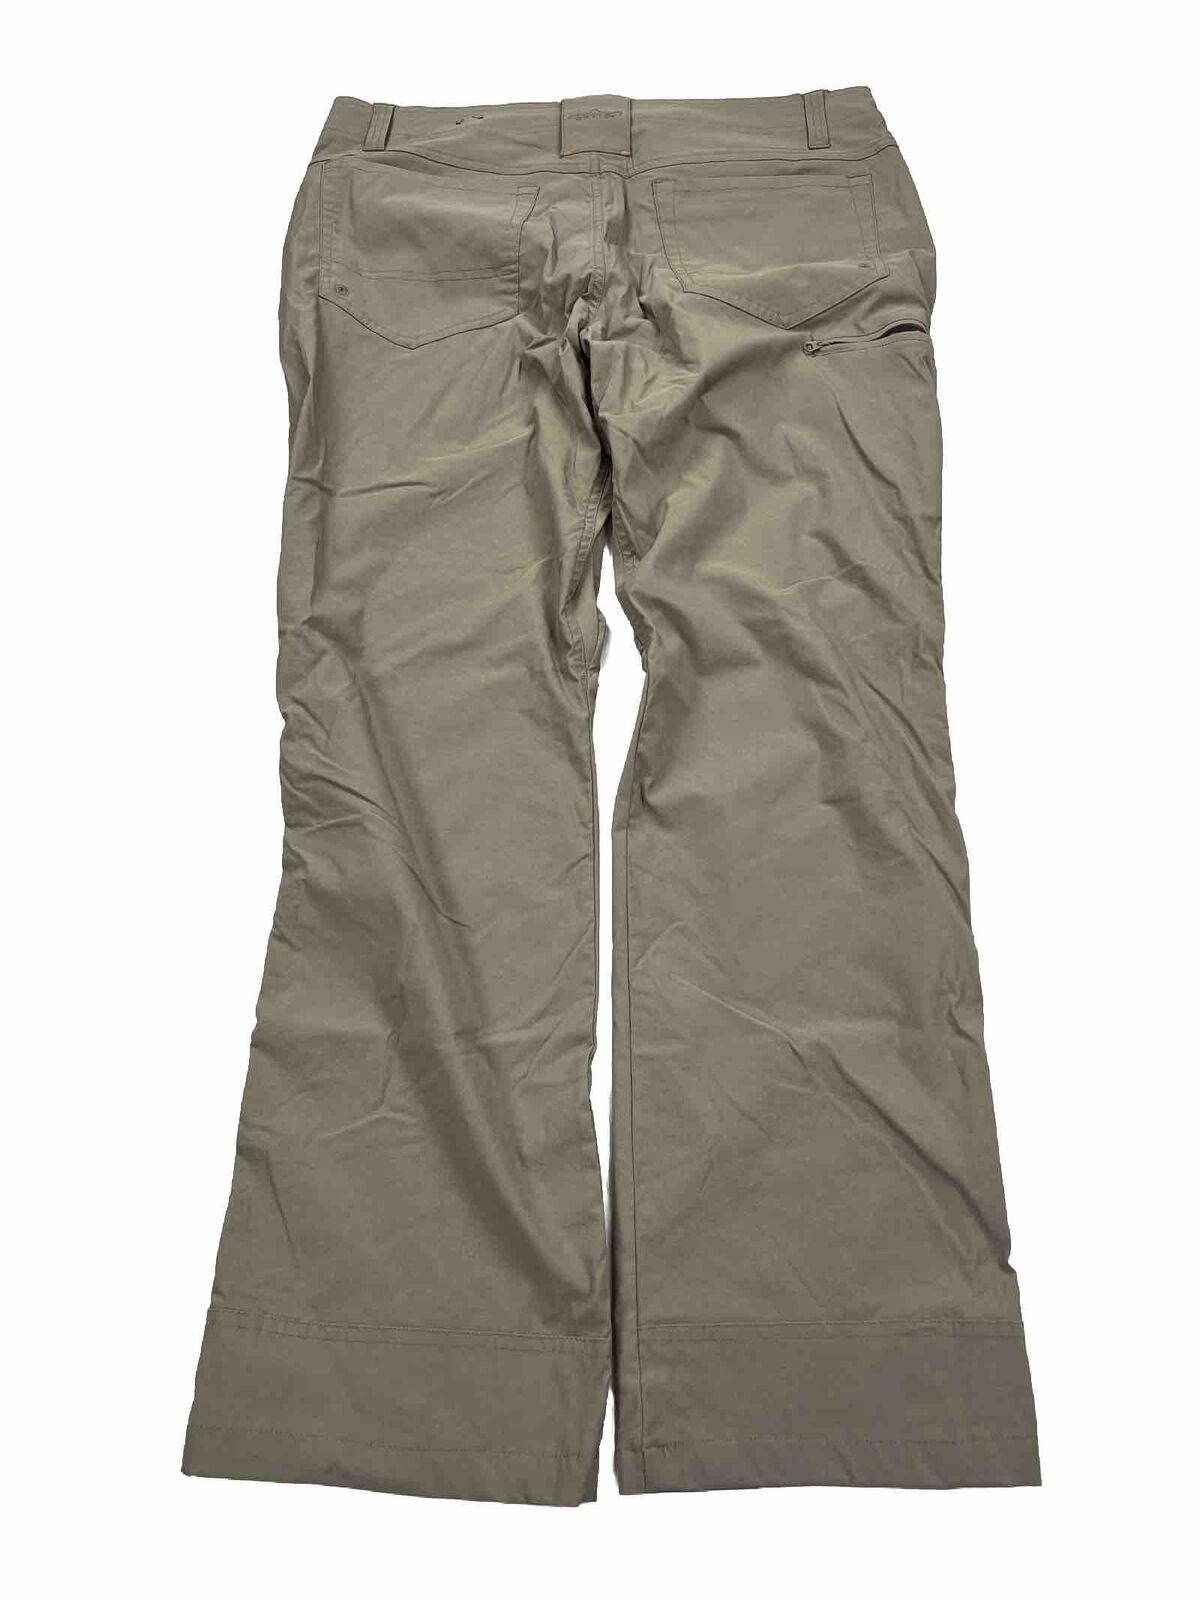 Orvis Men's Brown Fishing Hyrbid Tech Pants - 34x30